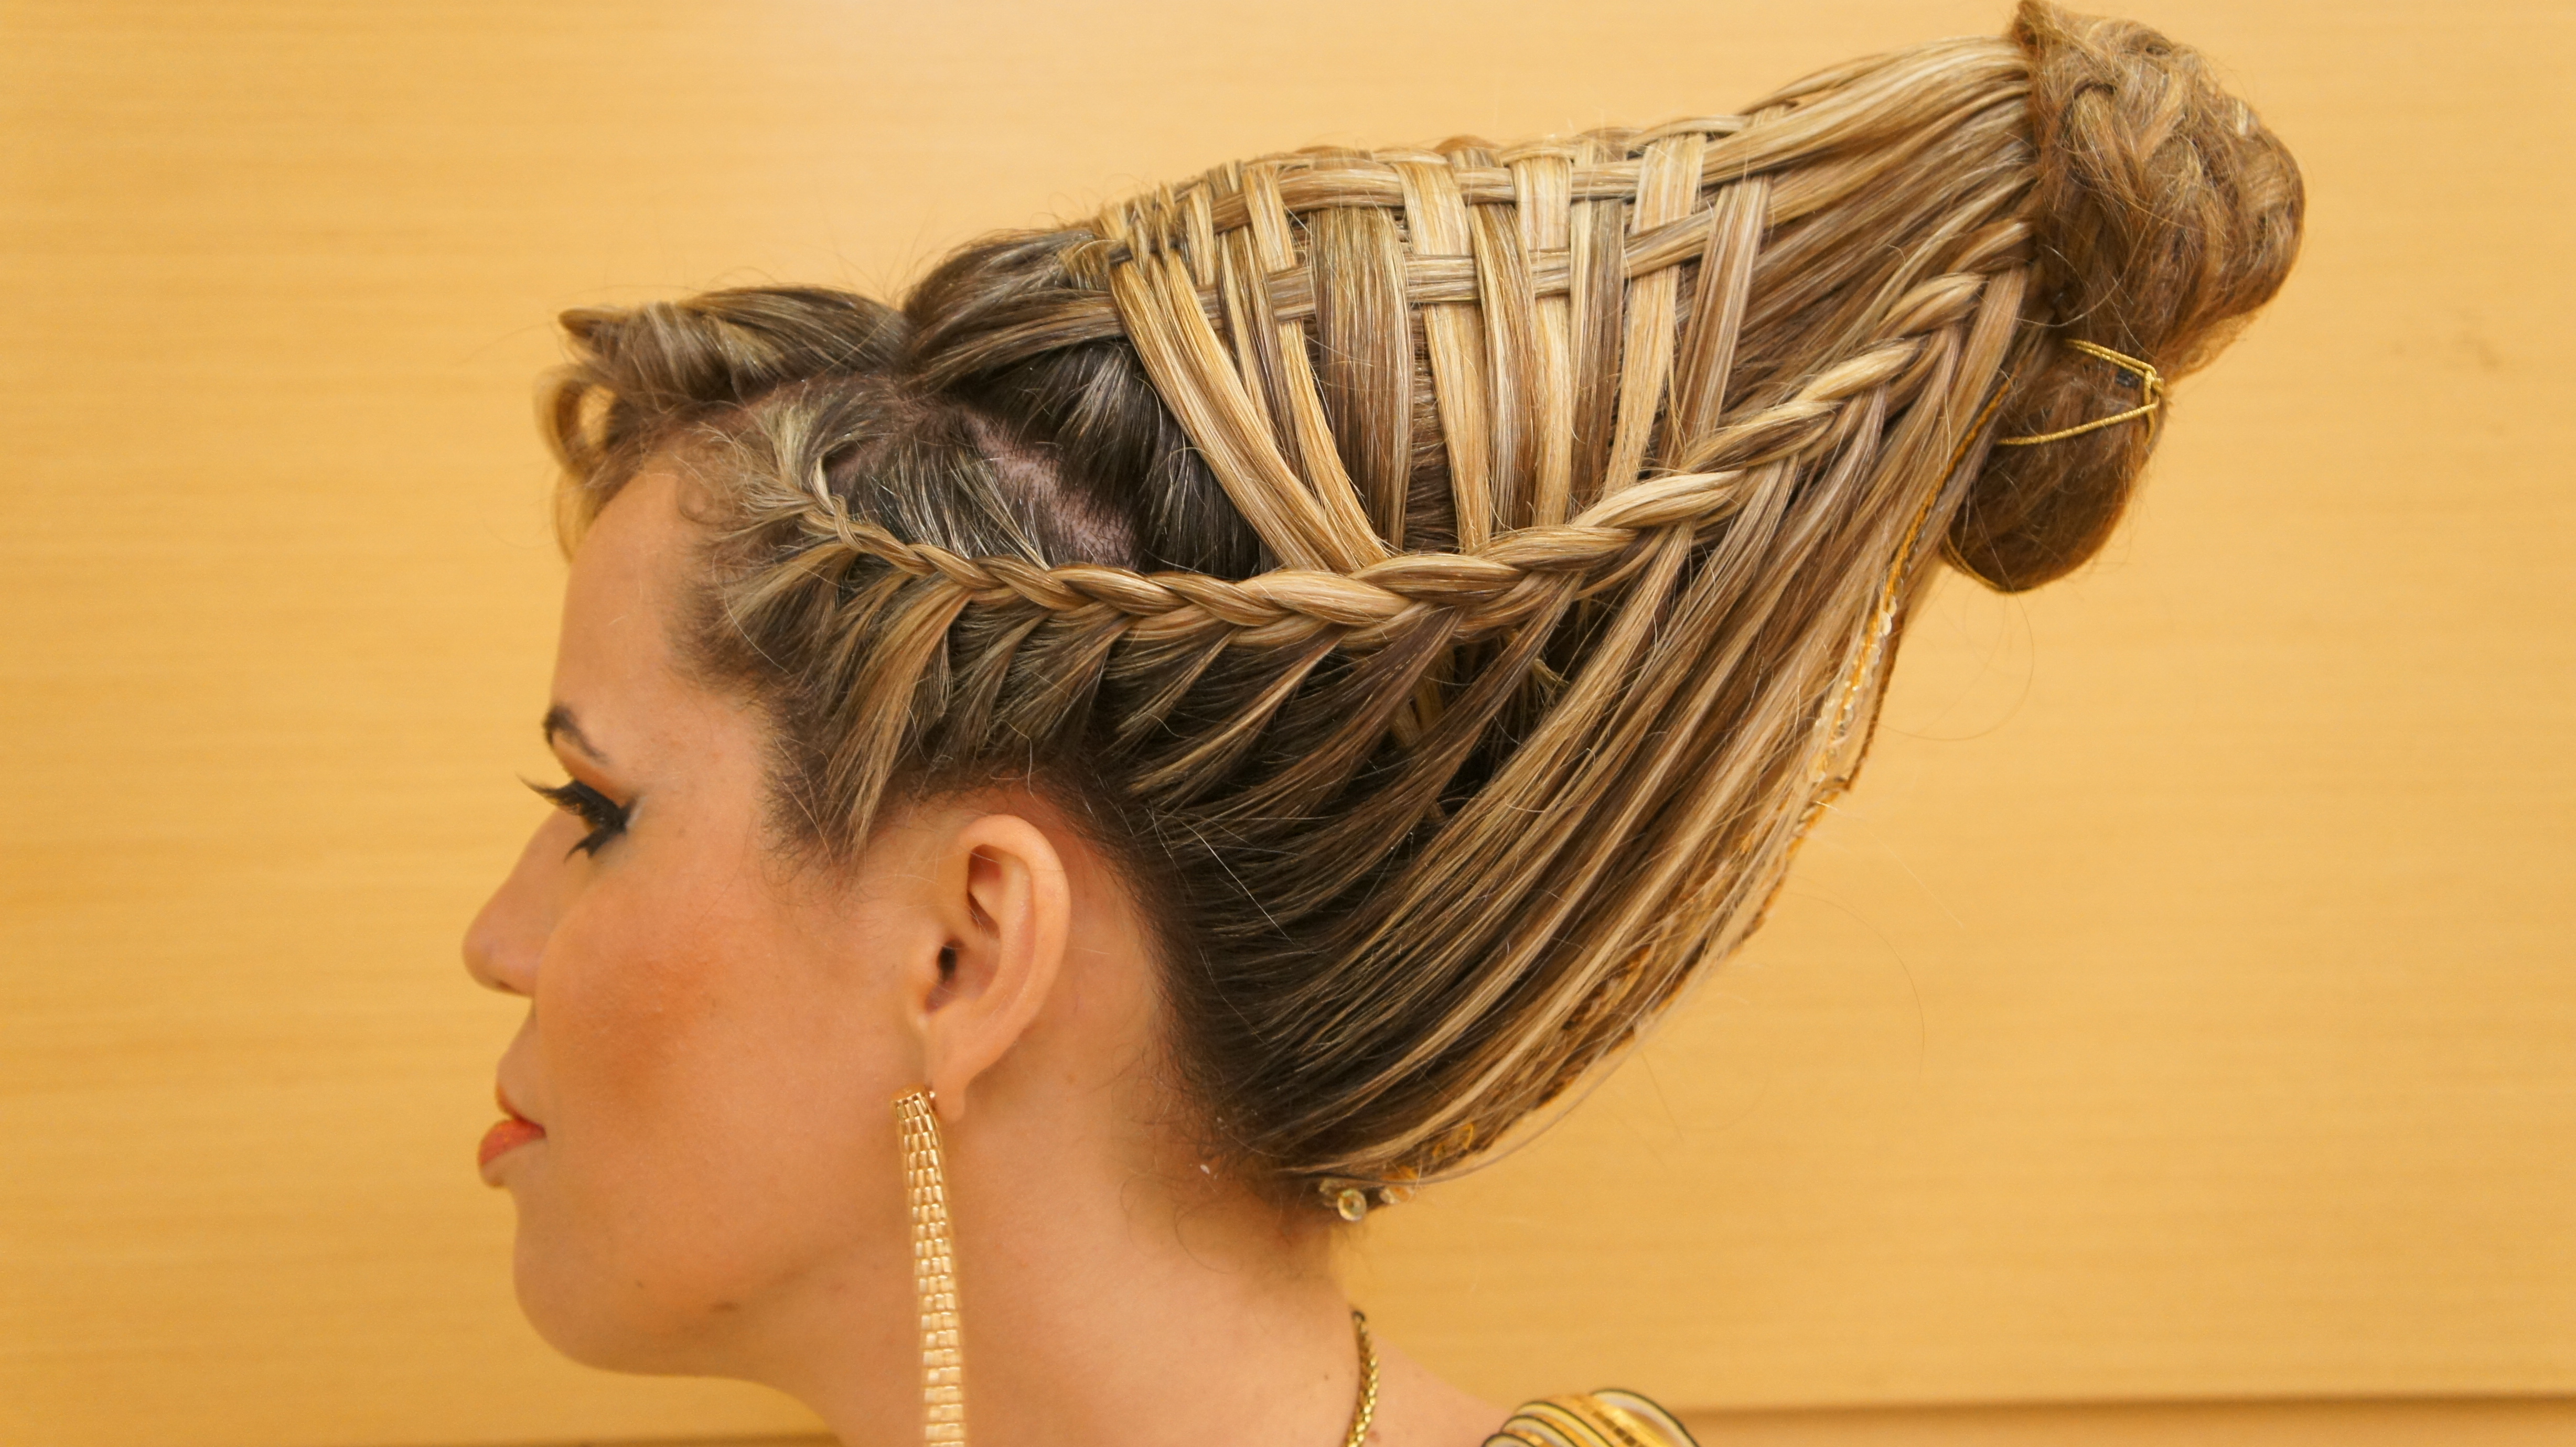 Cleopatra - Trabalho conceitual Suporte, trança, e etc. visagista cabeleireiro(a) maquiador(a) depilador(a)